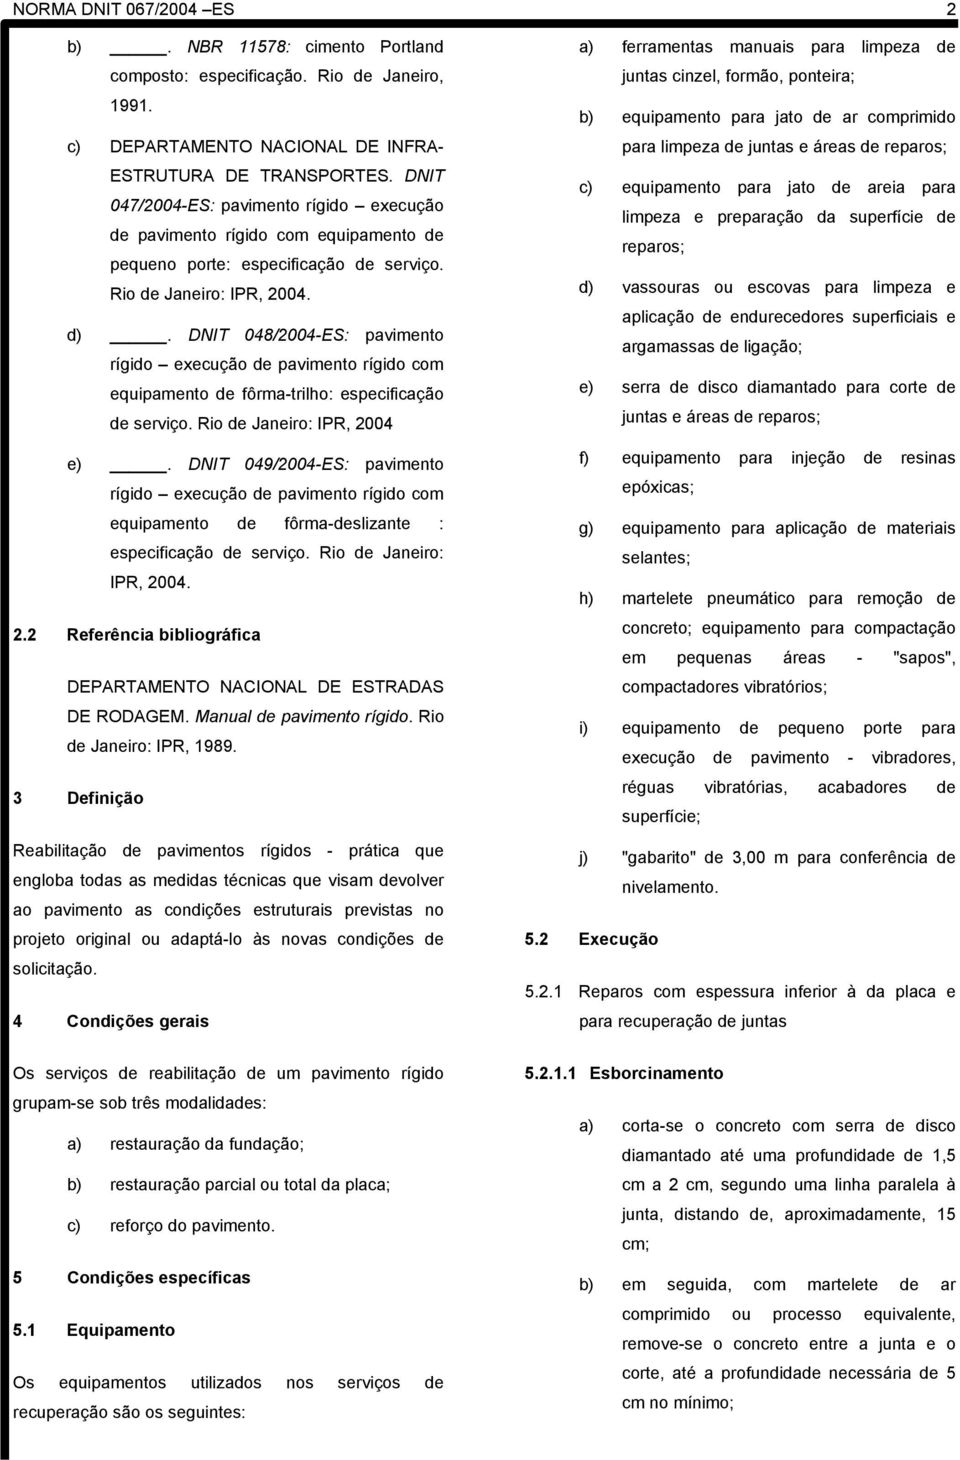 DNIT 048/2004-ES: pavimento rígido execução de pavimento rígido com equipamento de fôrma-trilho: especificação de serviço. Rio de Janeiro: IPR, 2004 e).